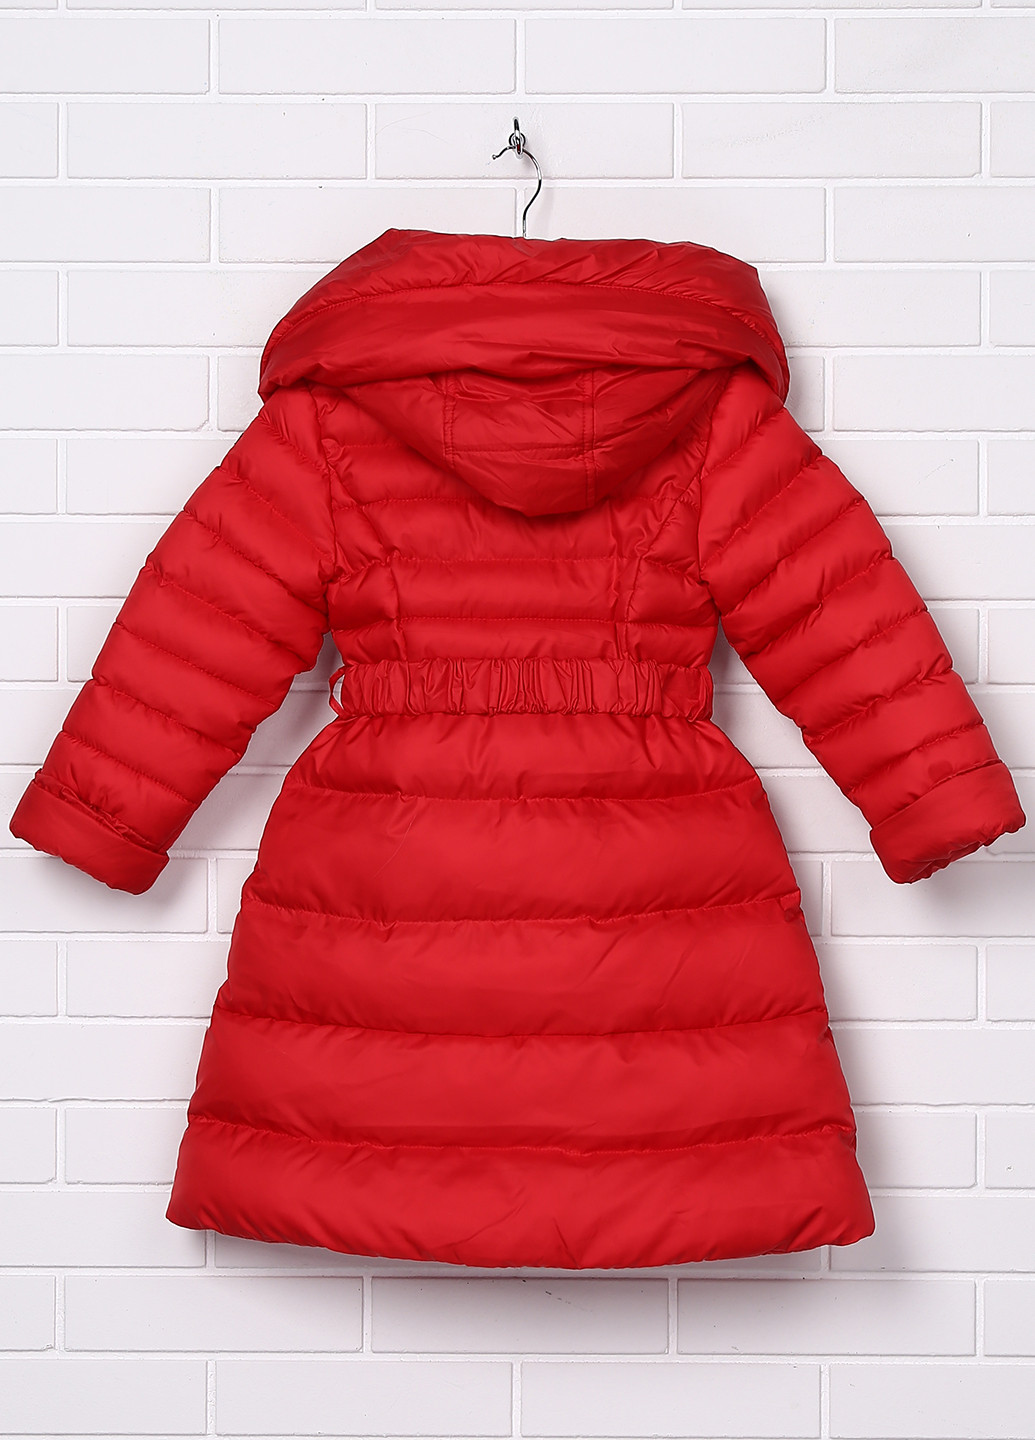 Красная зимняя куртка Nui Very